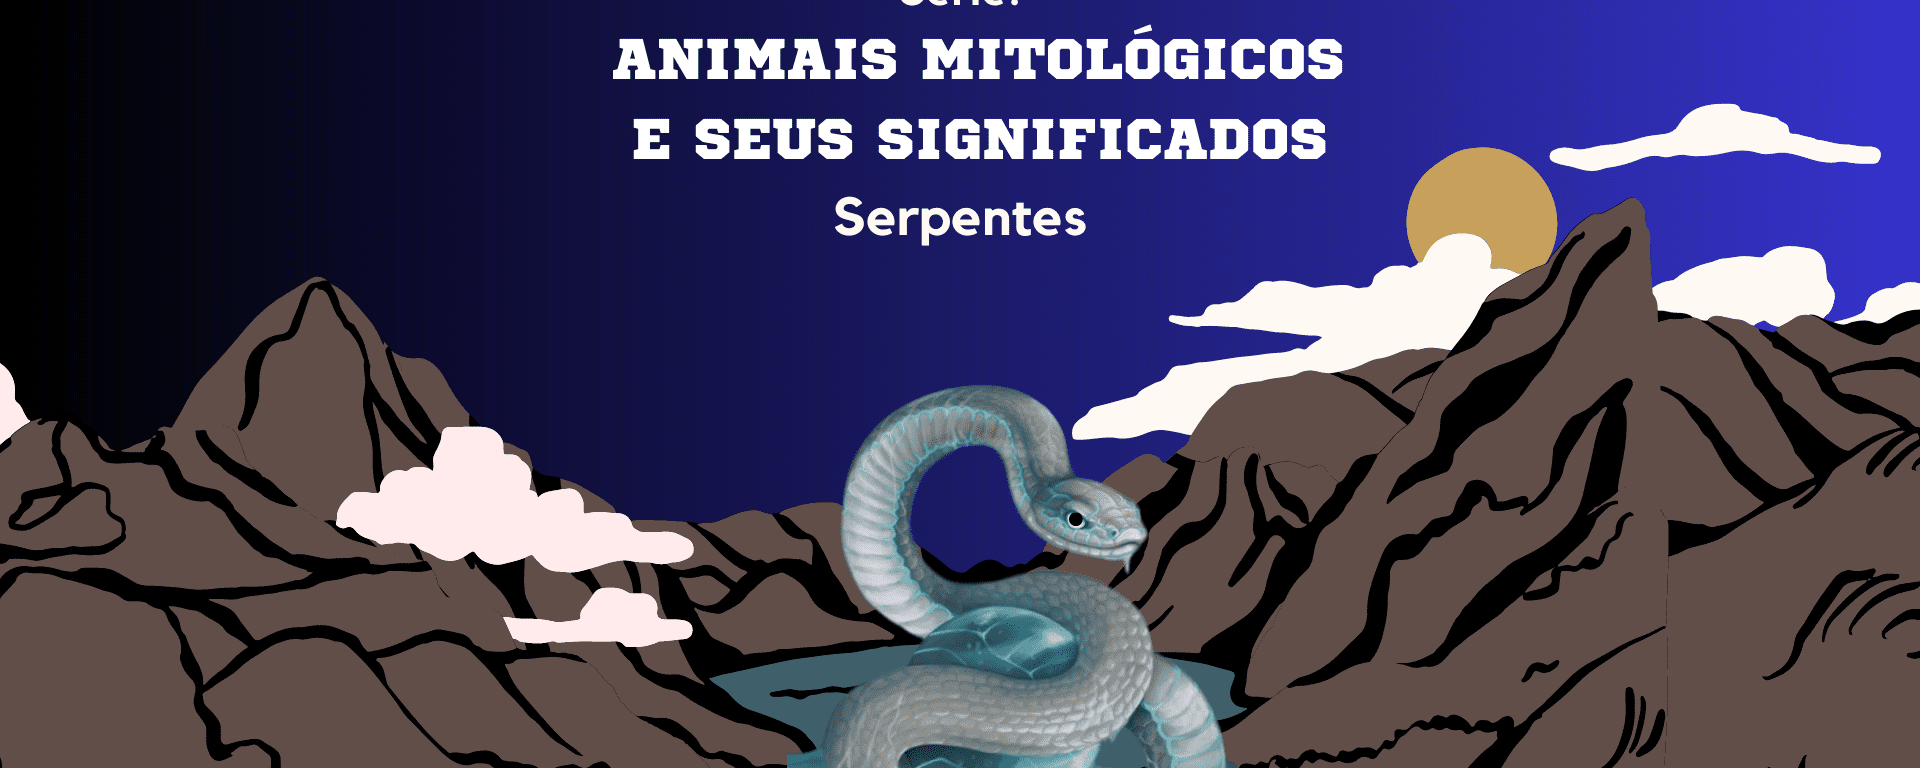 Série “Animais Mitológicos e seus Significados”: Serpentes